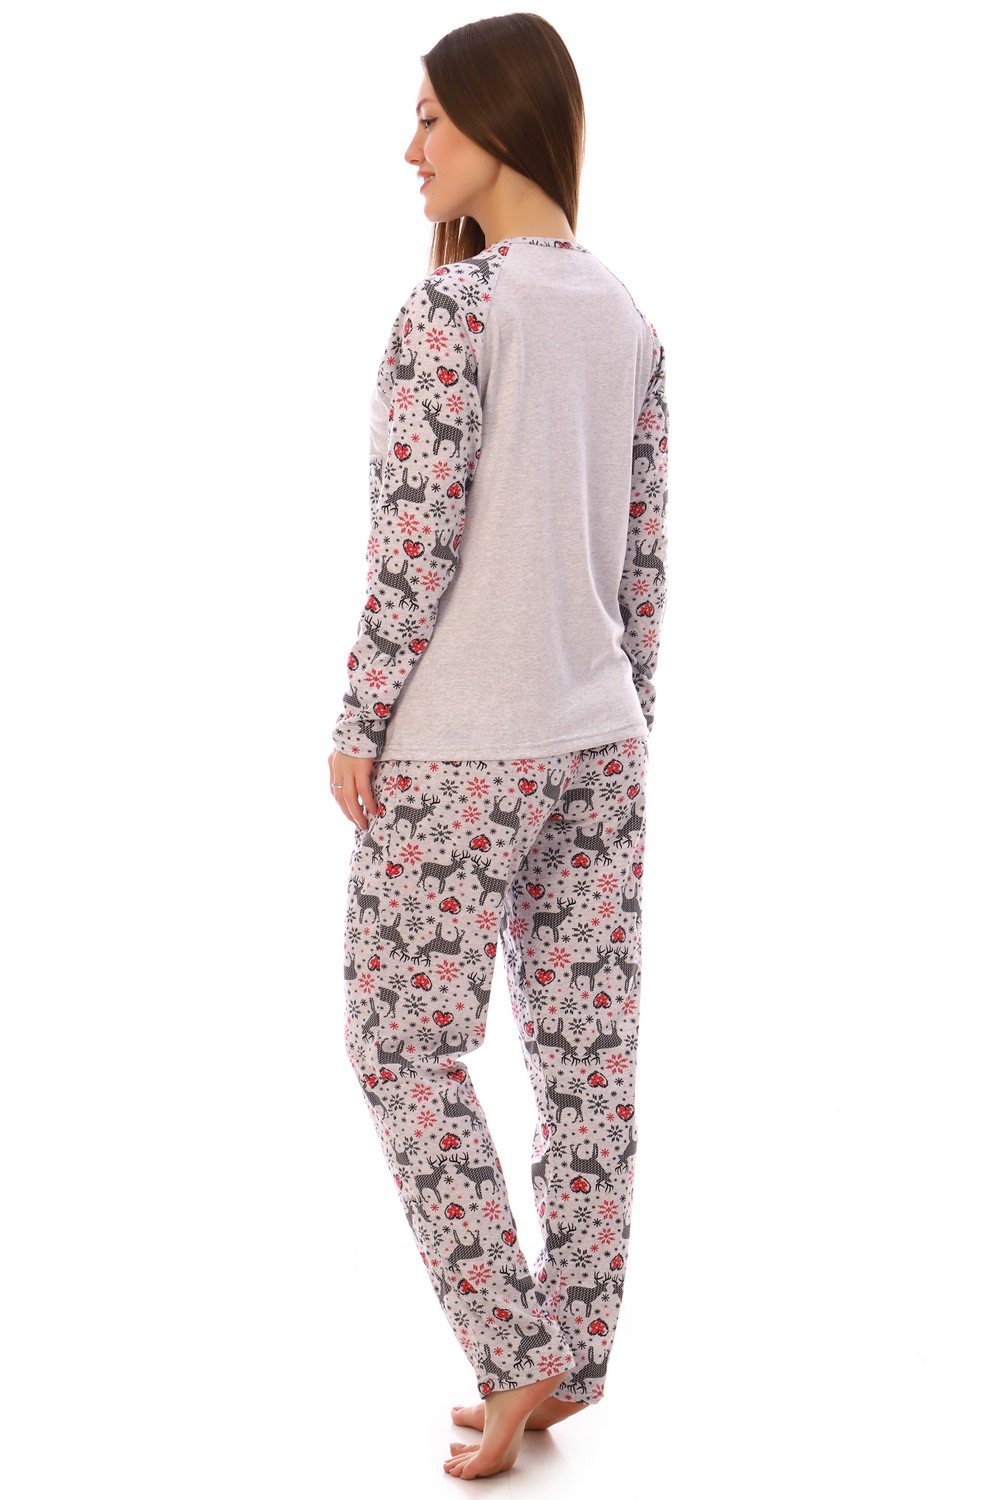 Фото товара 20516, пижама с длинным рукавом